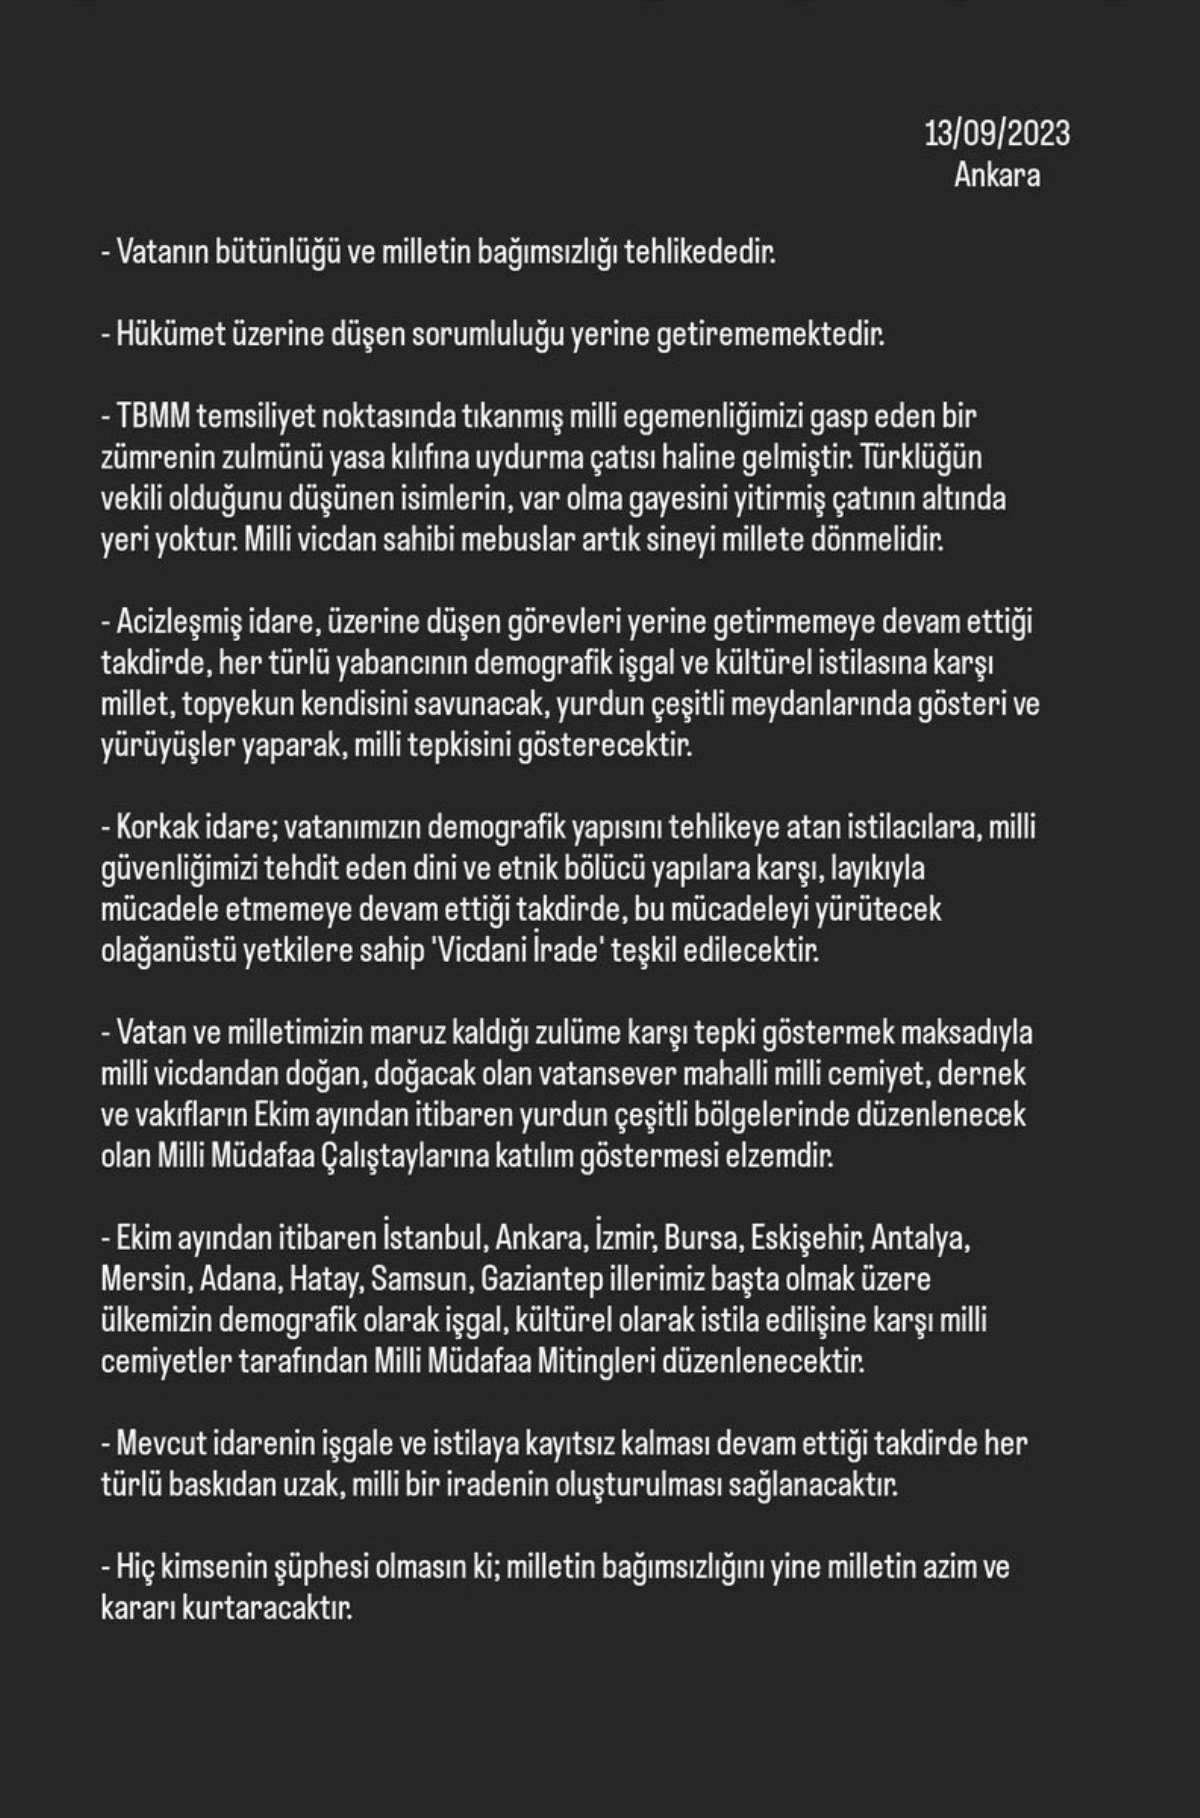 Son dakika... Ankara Cumhuriyet Başsavcılığı'ndan 'Müdafa Hareketi'ne  soruşturma